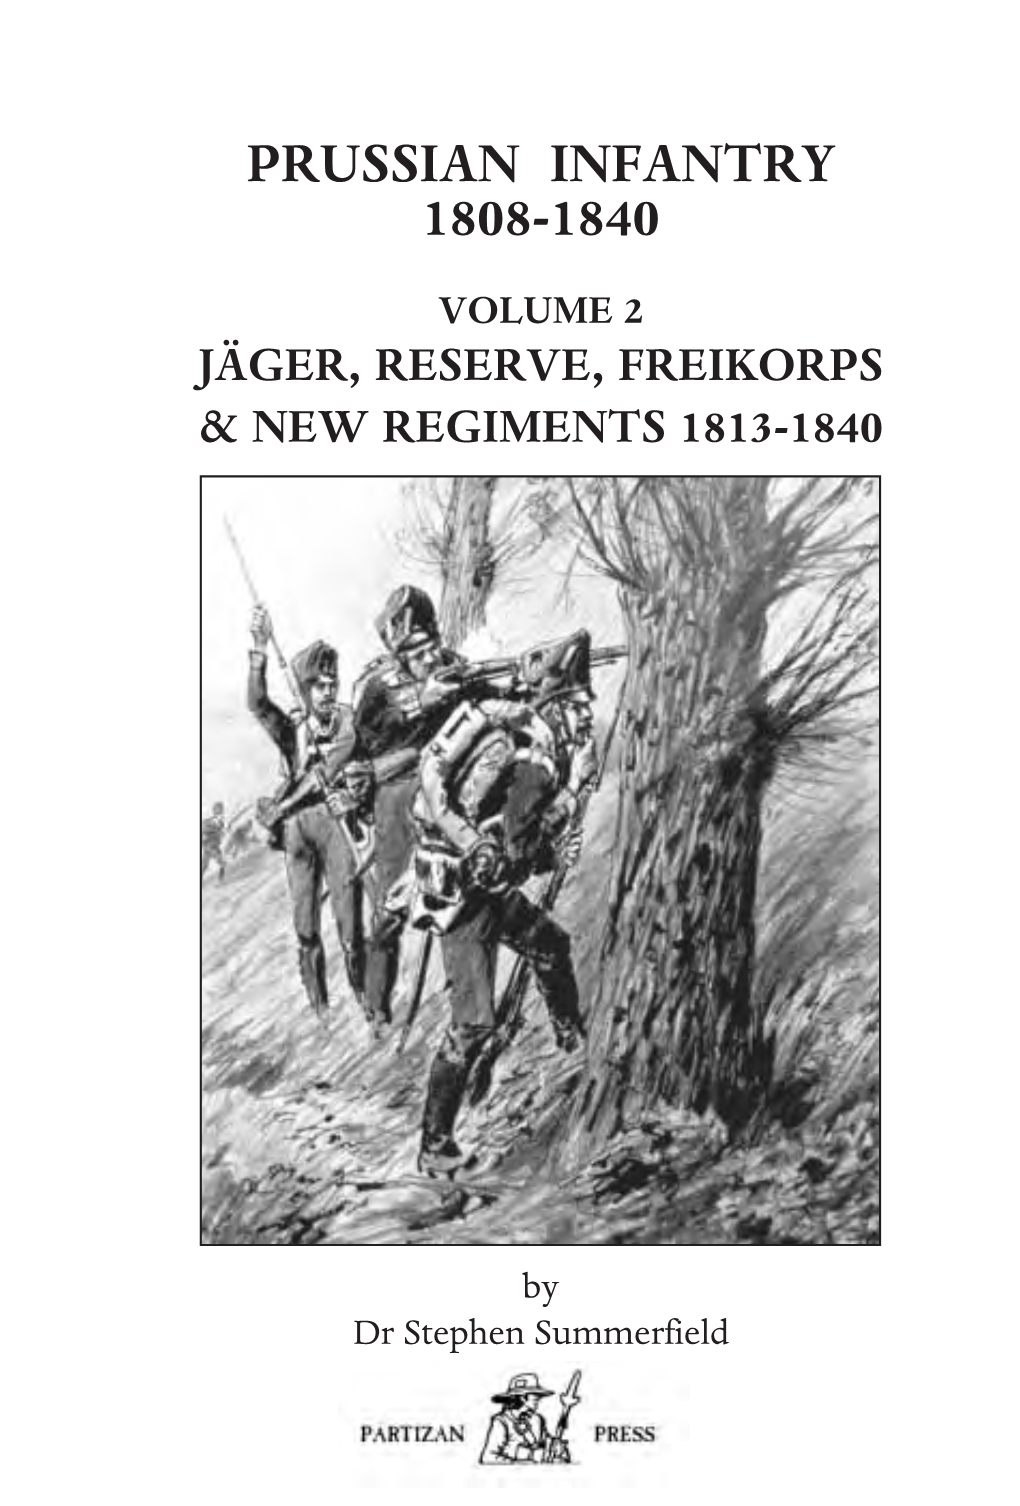 Prussian Infantry 1808-1840 Volume 2 Jäger, Reserve, Freikorps & New Regiments 1813-1840